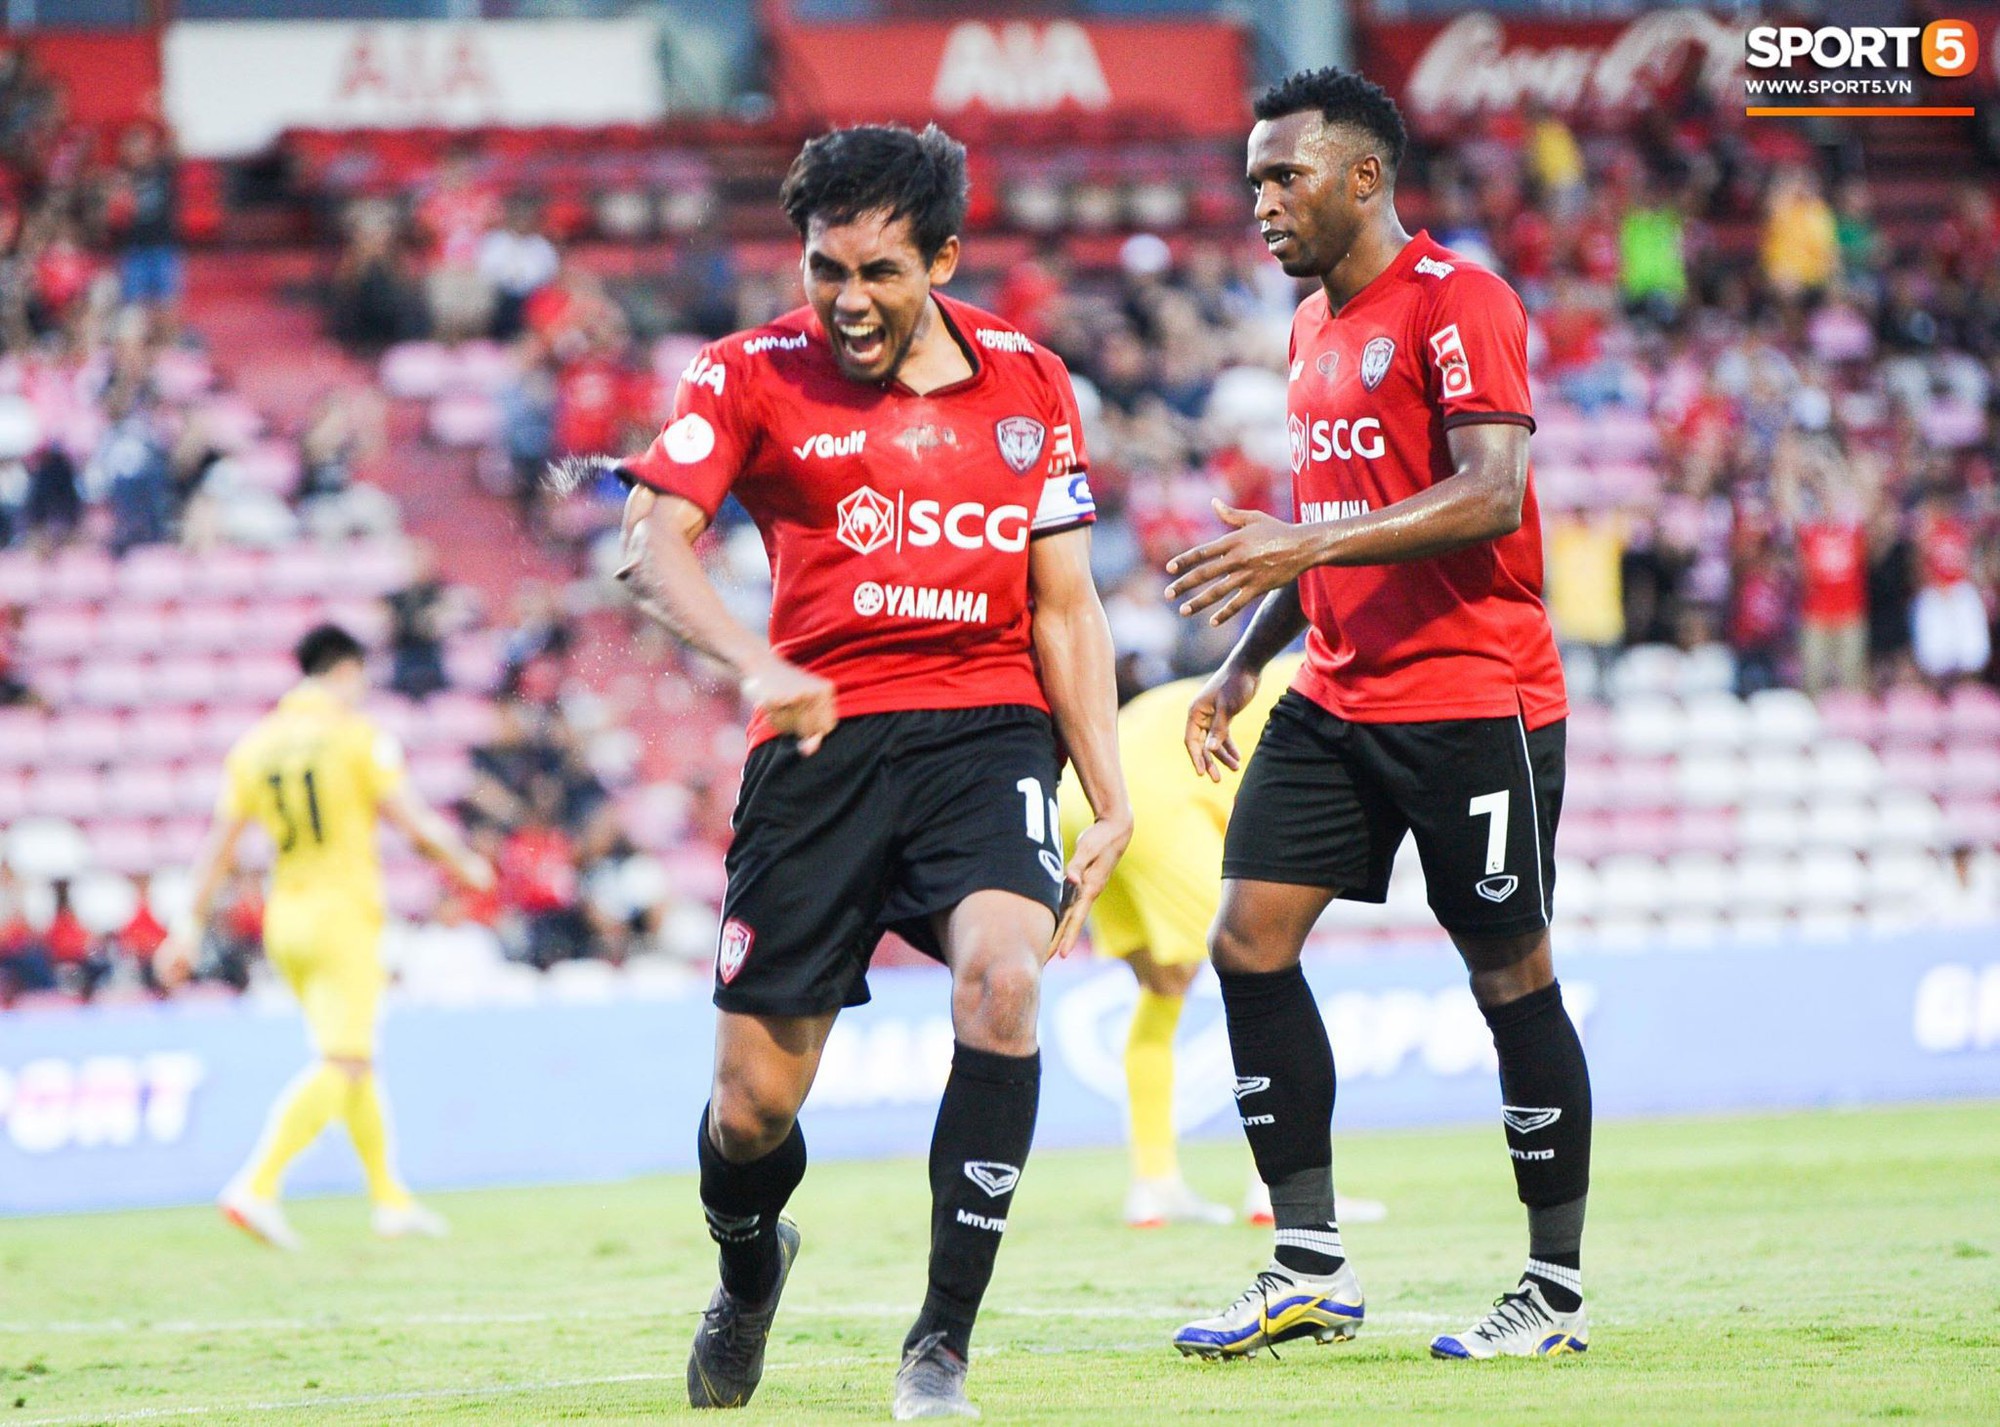 Tiền đạo số 1 tuyển Thái dè chừng Hải Quế, Đình Trọng tại Kings Cup 2019 - Ảnh 6.